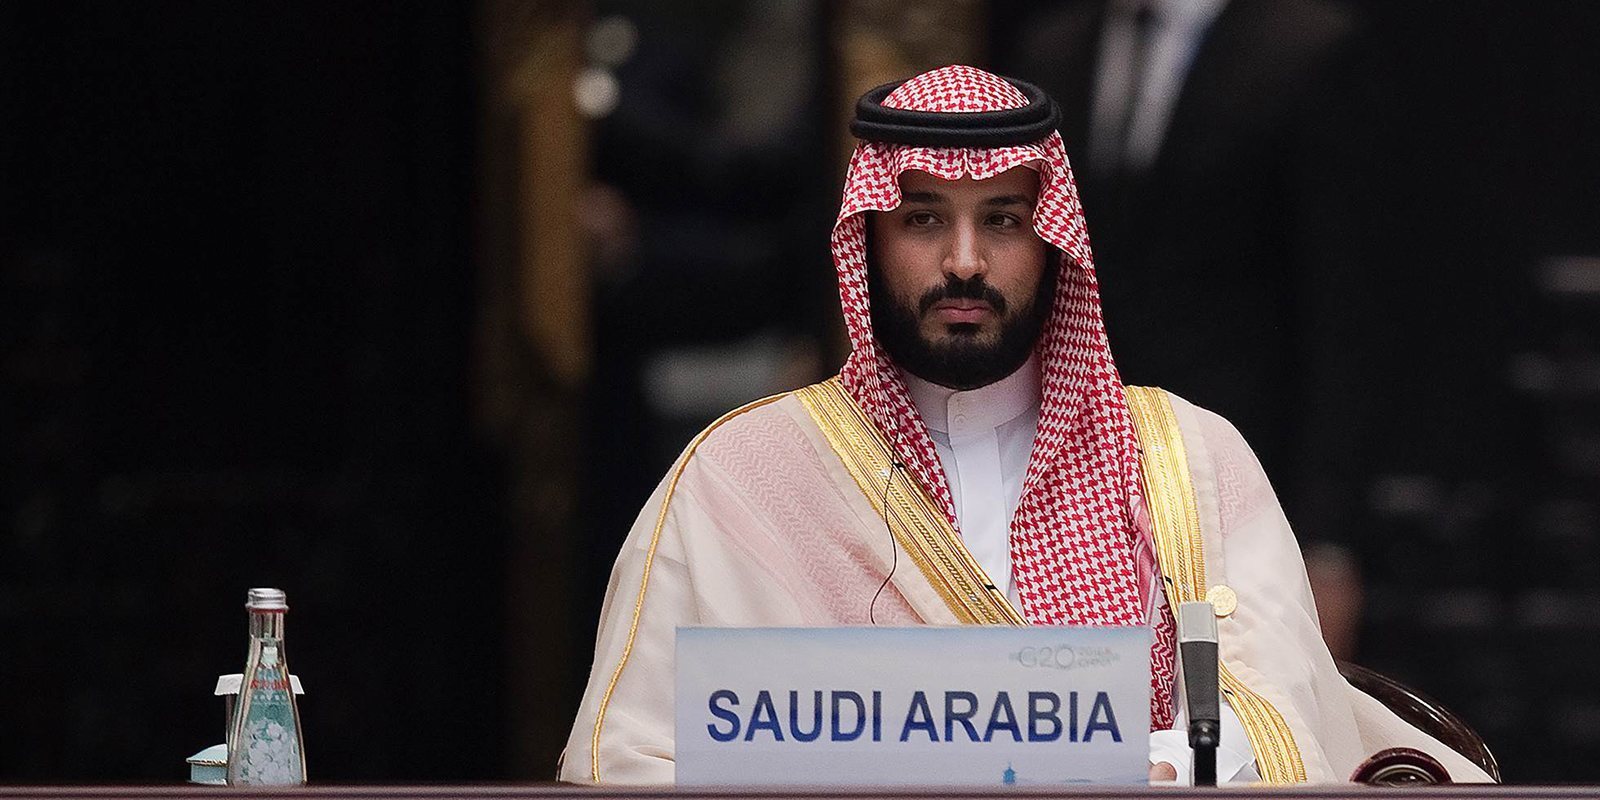 El príncipe de Arabia Saudí se reúne con los pesos pesados de Hollywood